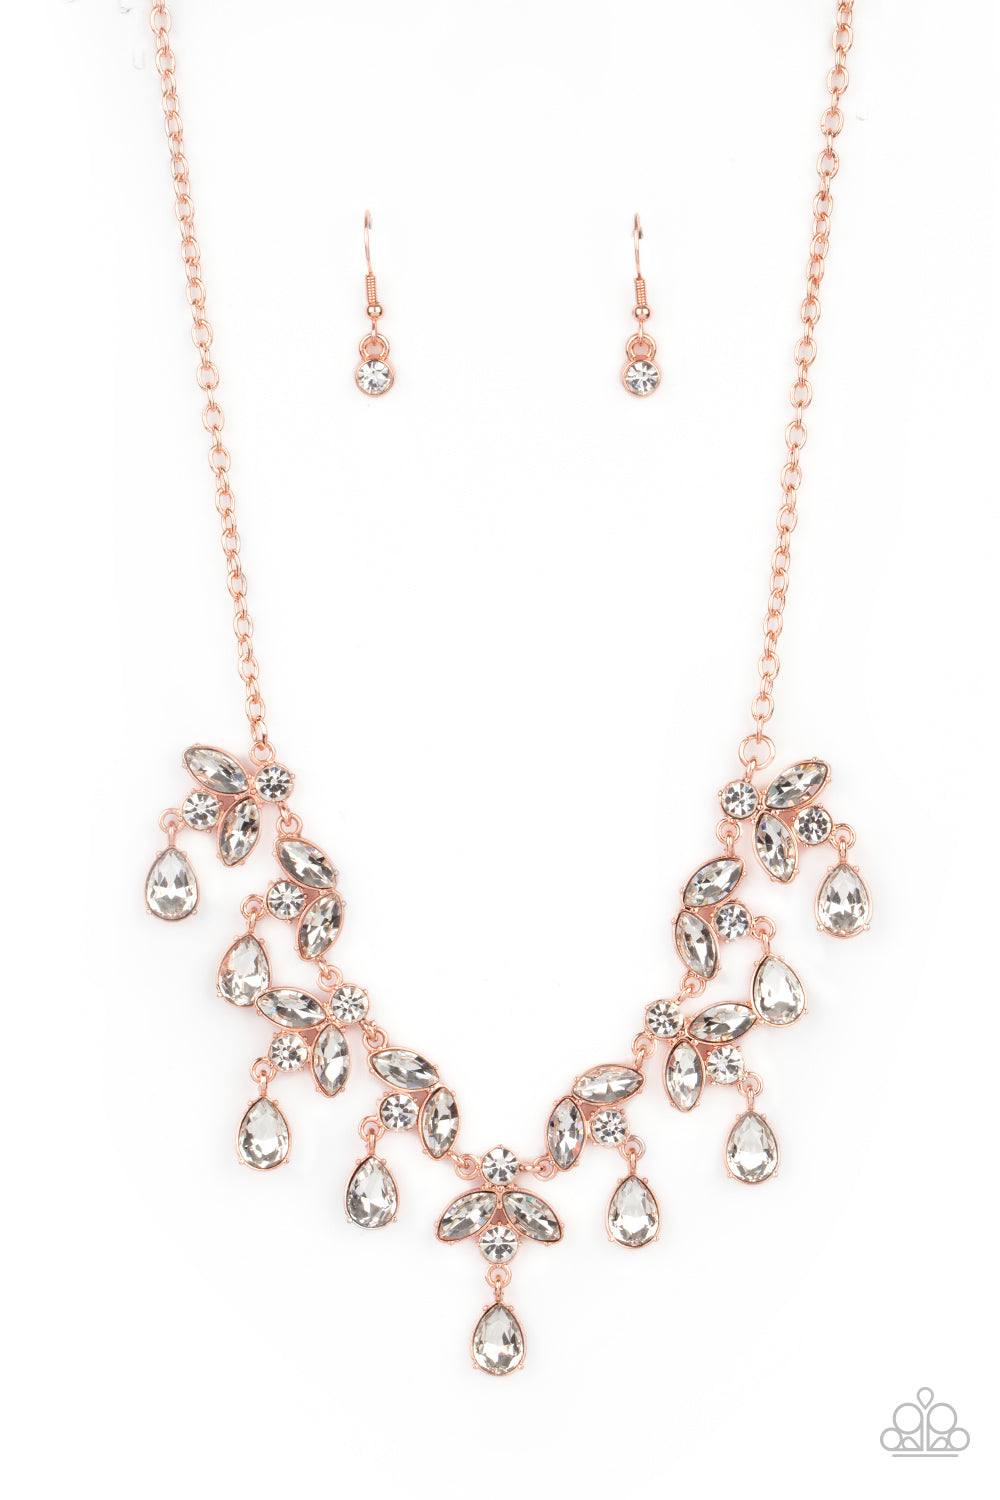 Vintage Royale - Copper Necklace Set - Princess Glam Shop